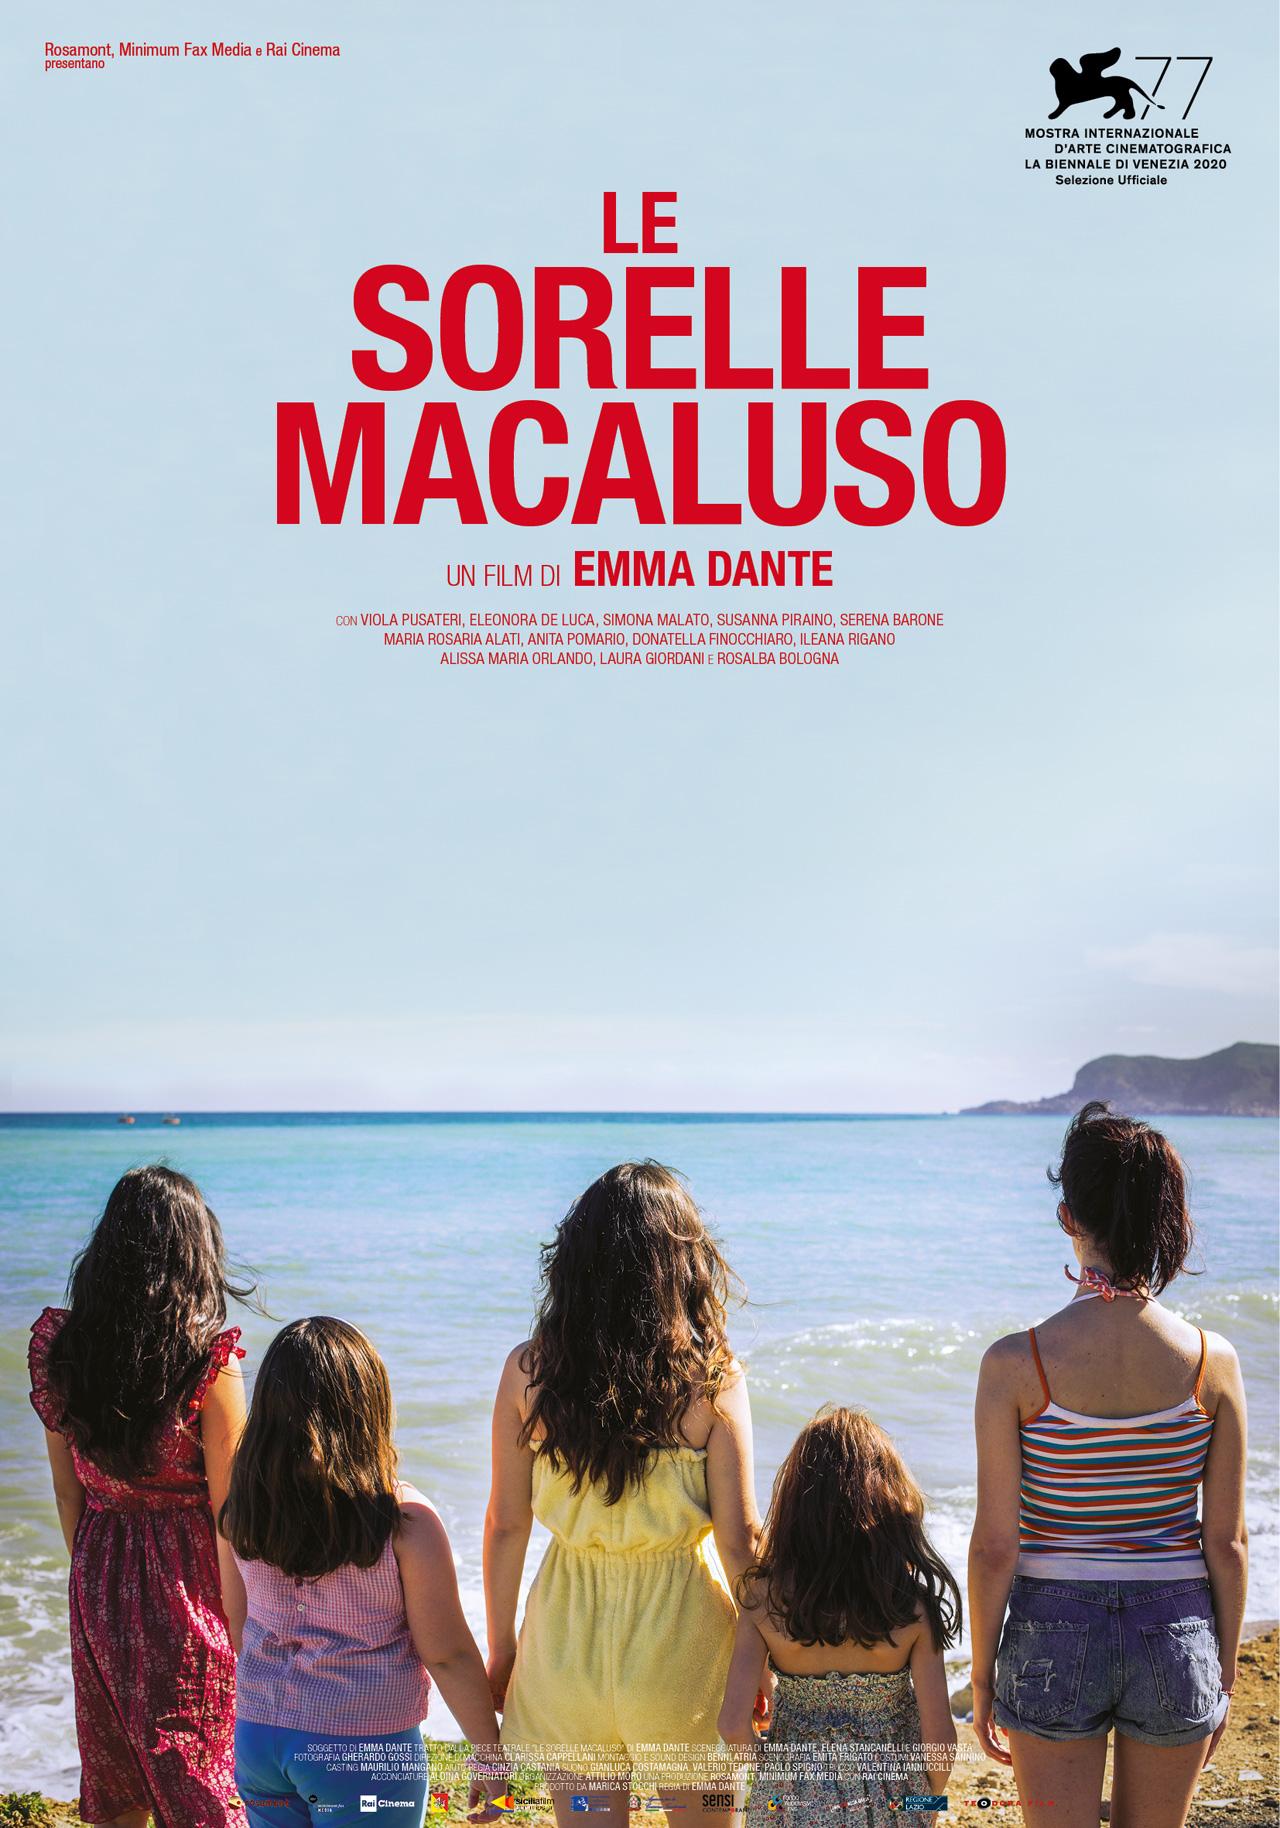  Dall'articolo: Le sorelle Macaluso, il poster ufficiale del film.